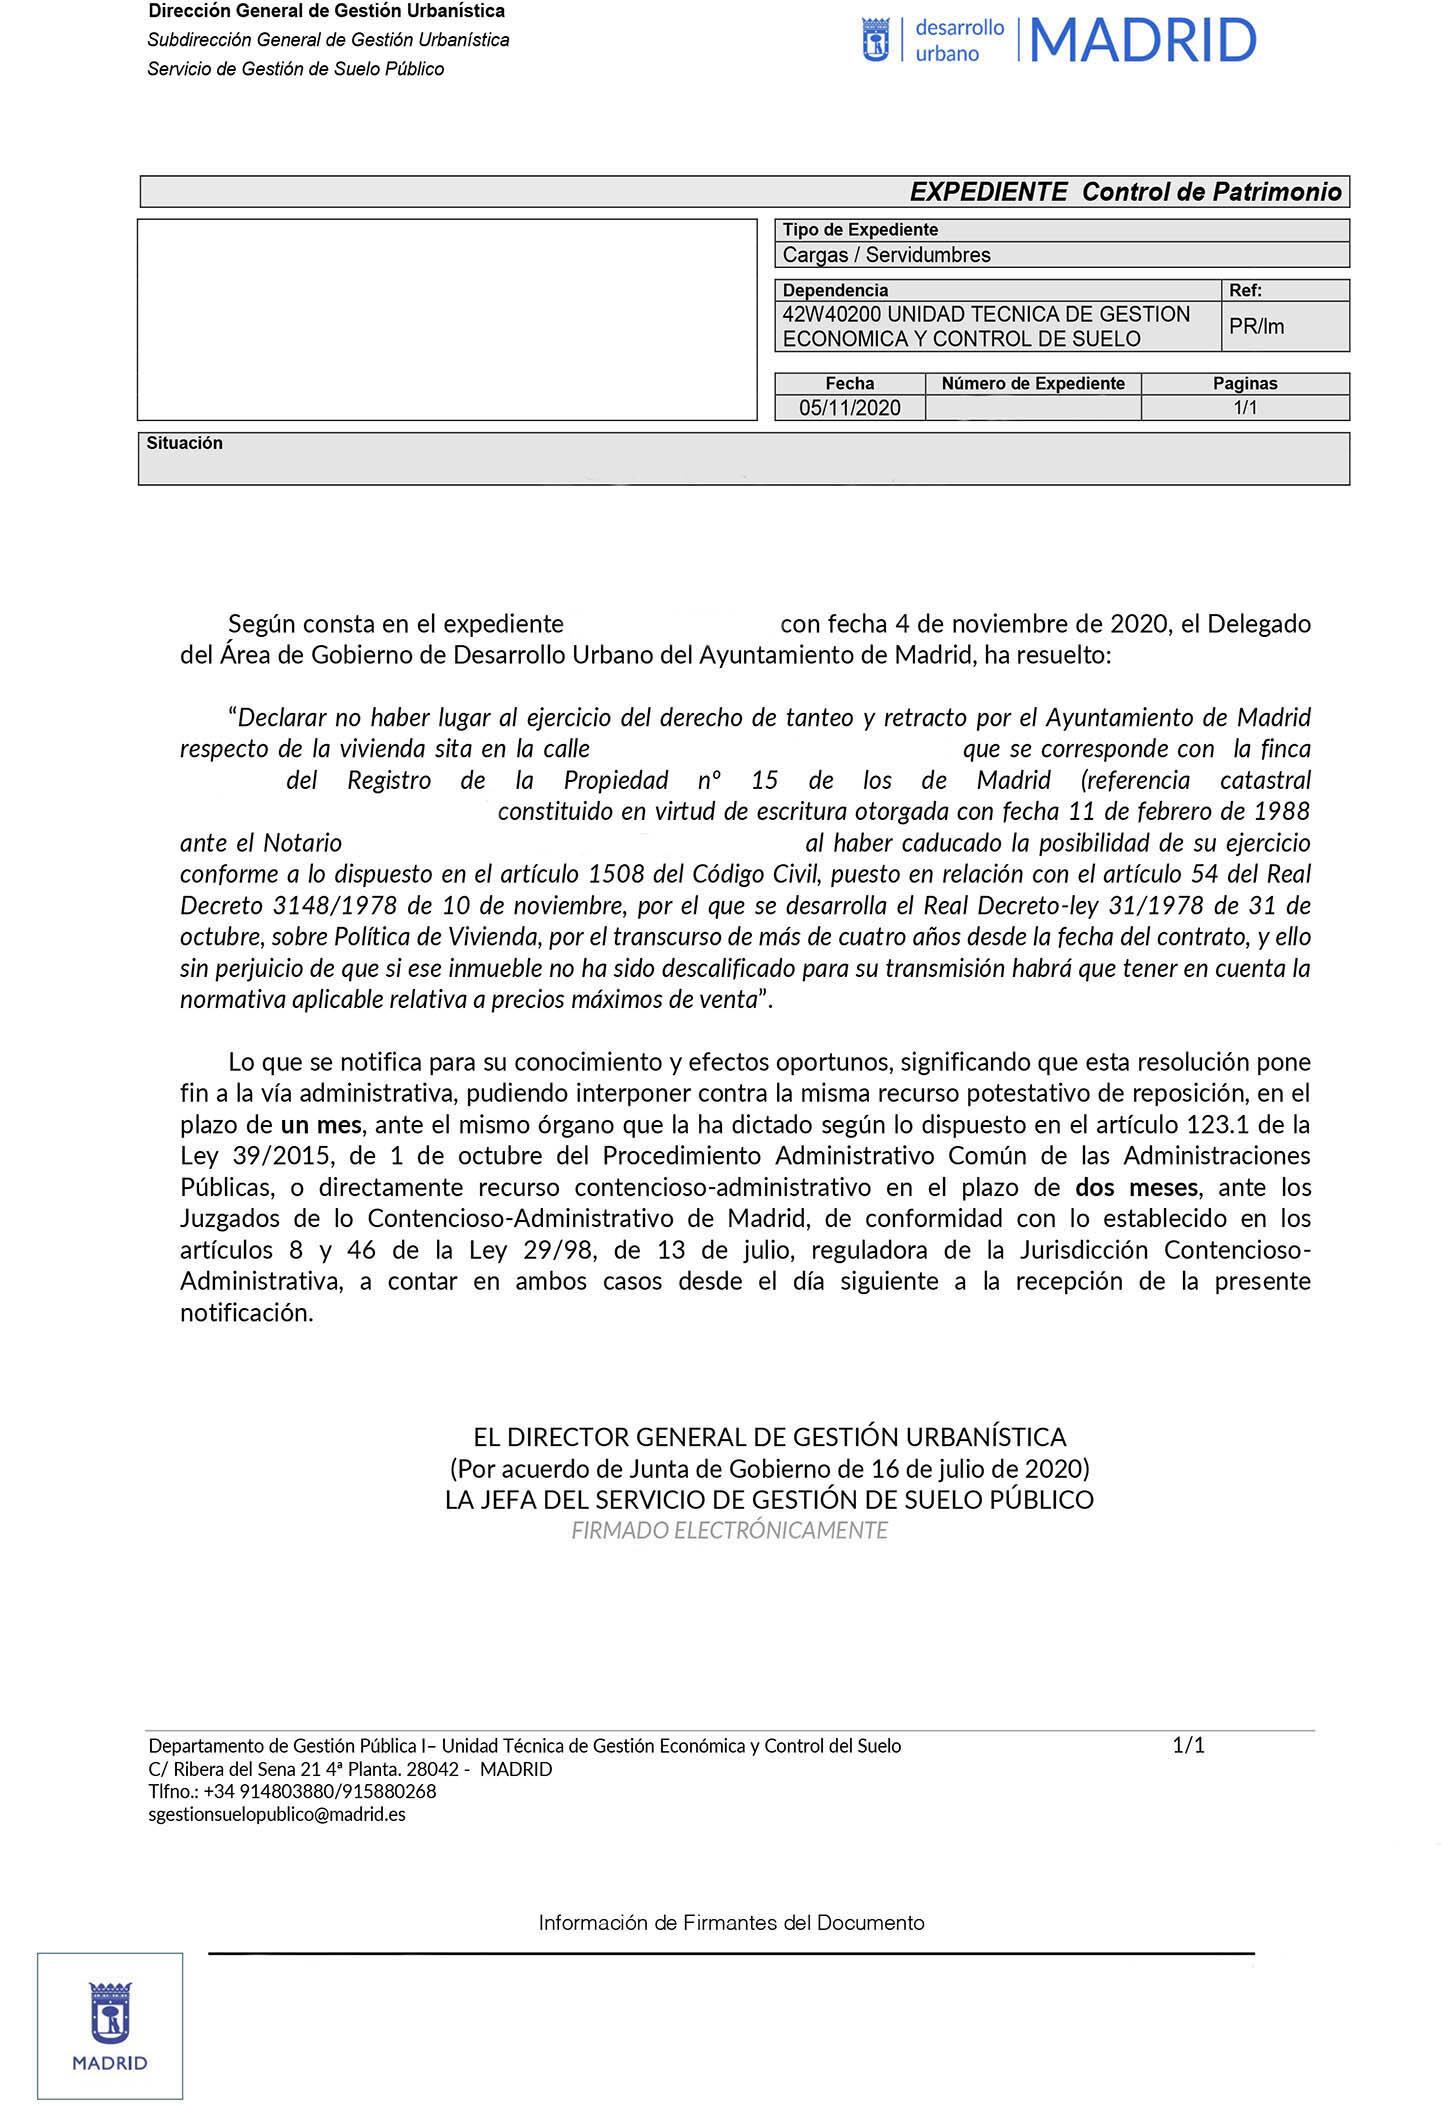 Contestación Ayuntamiento de Madrid a no ejercer su derecho de tanteo y retracto